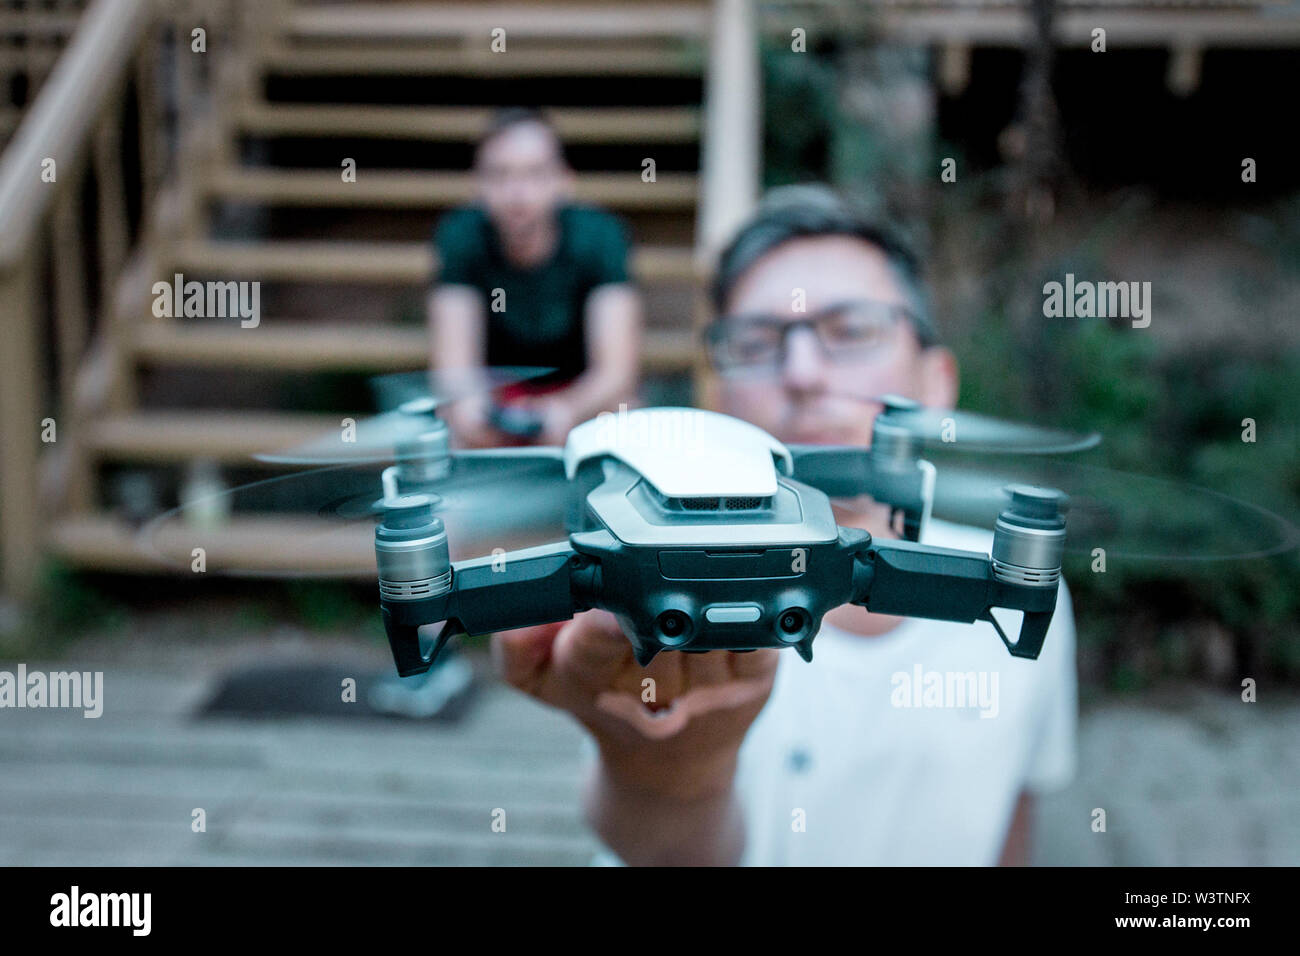 Vilnius, Litauen - 8. Juni 2019: Mann, DJI MAVIC LUFT - Drone mit Kamera, auf einem 3-Achs Gimbal montiert. Stockfoto